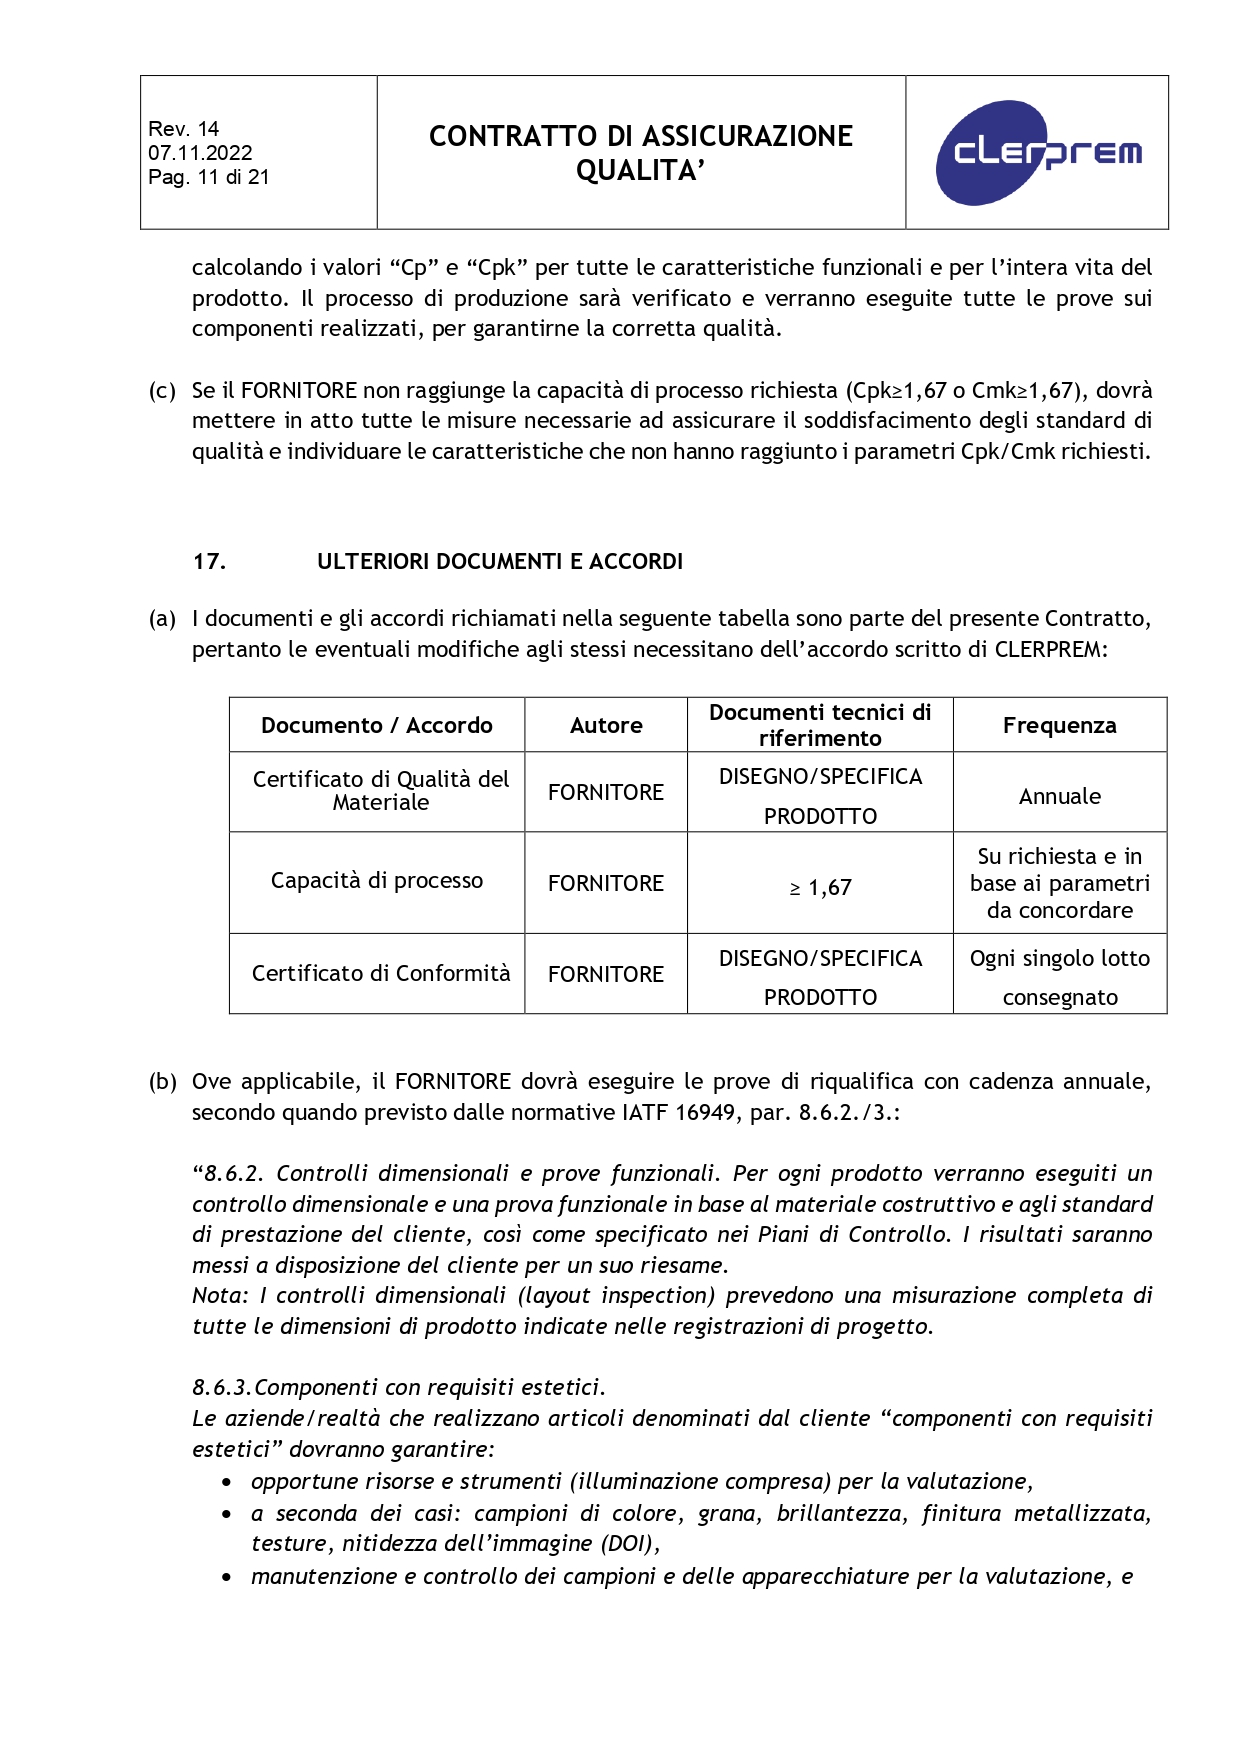 Accordo di Assicurazione Qualità rev. 14_page-0011